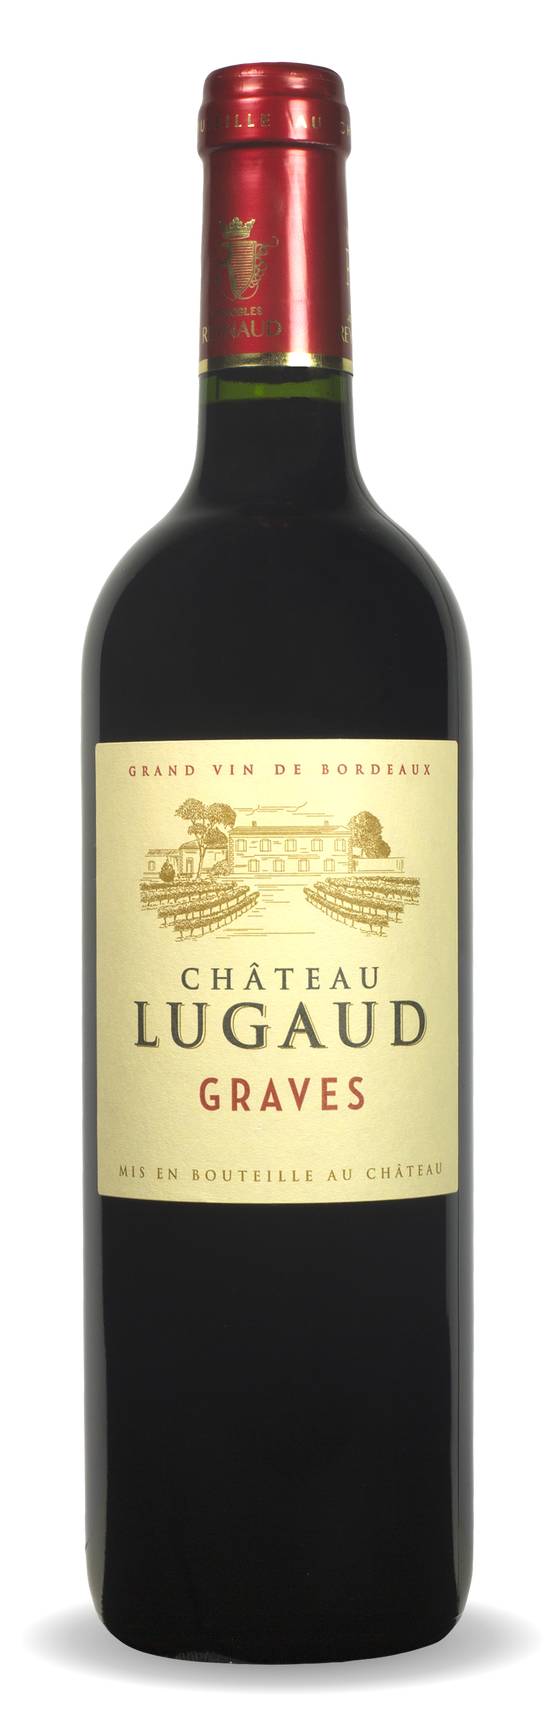 Château Lugaud - Grand vin de Bordeaux graves rouge 2017 (750 ml)